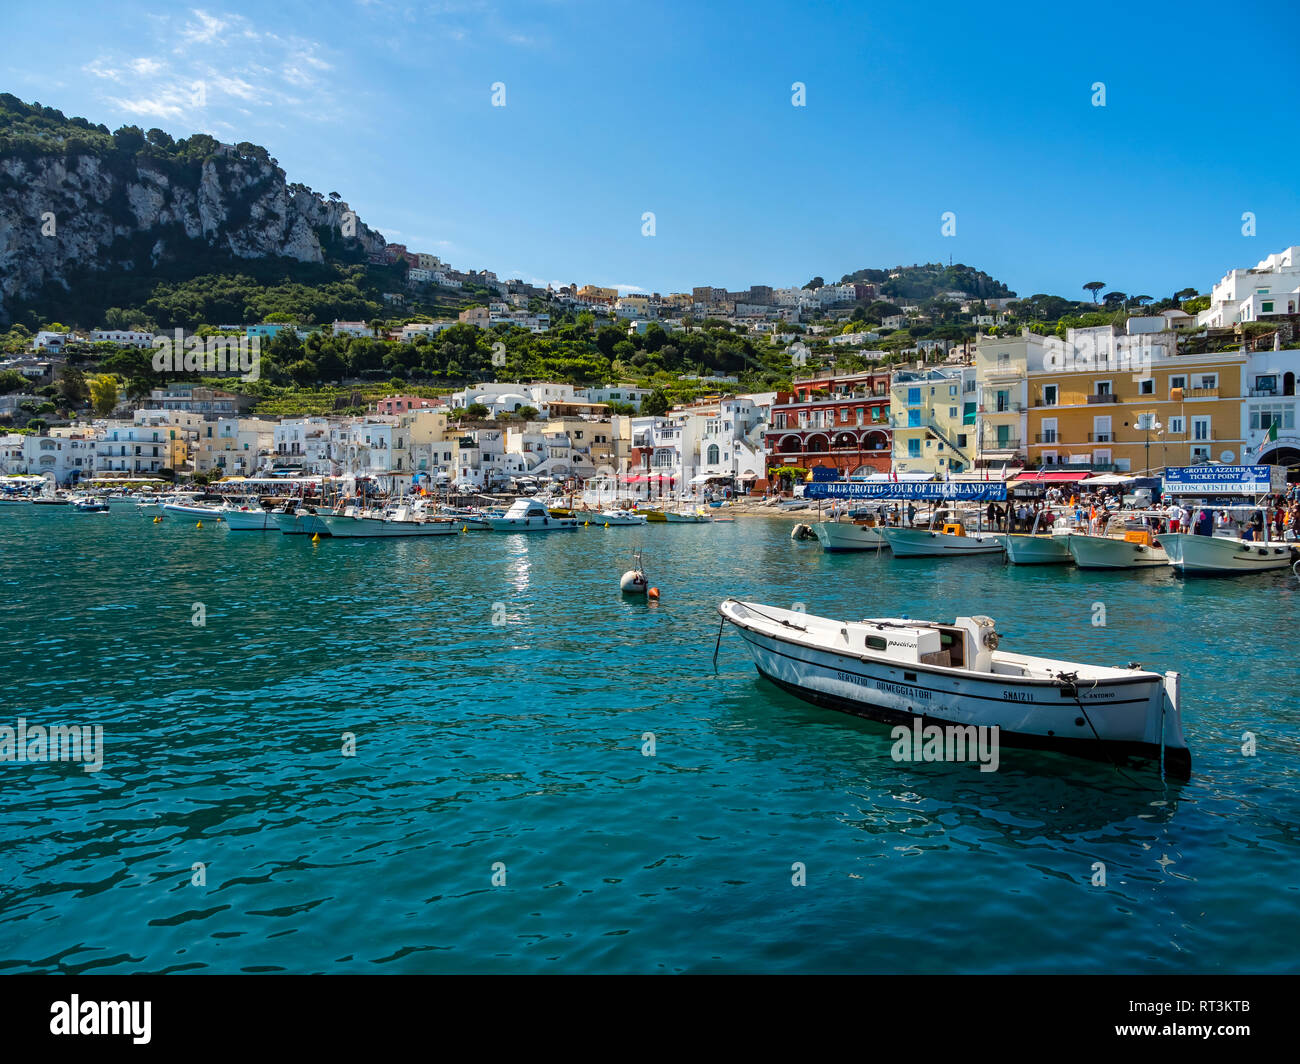 Italy, Campania, Capri, Marina Grande Stock Photo